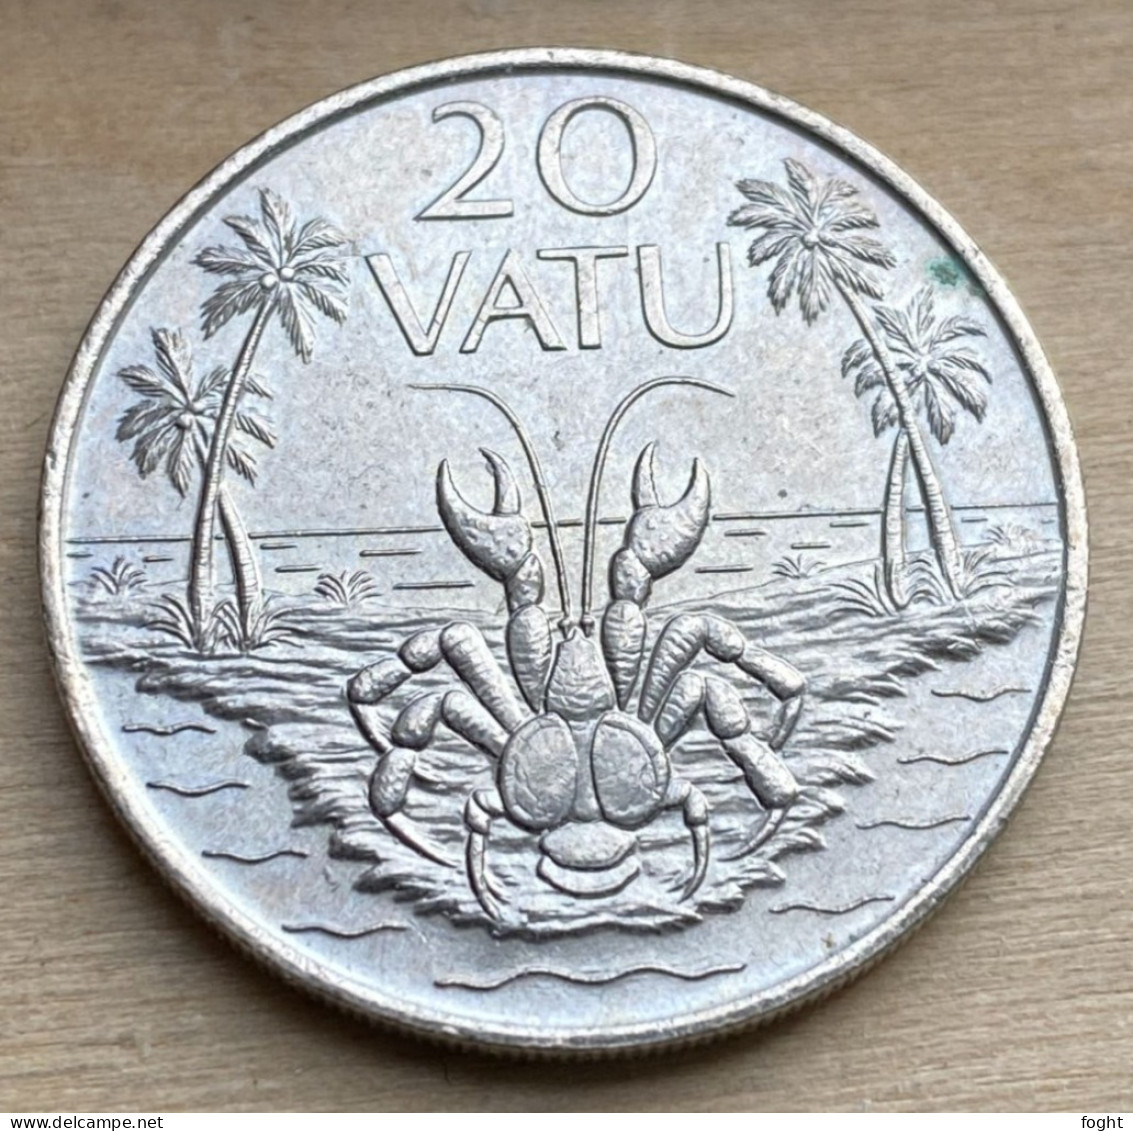 1990 Vanuatu Standard Coin 20 Vatu,KM#7,7368K - Vanuatu